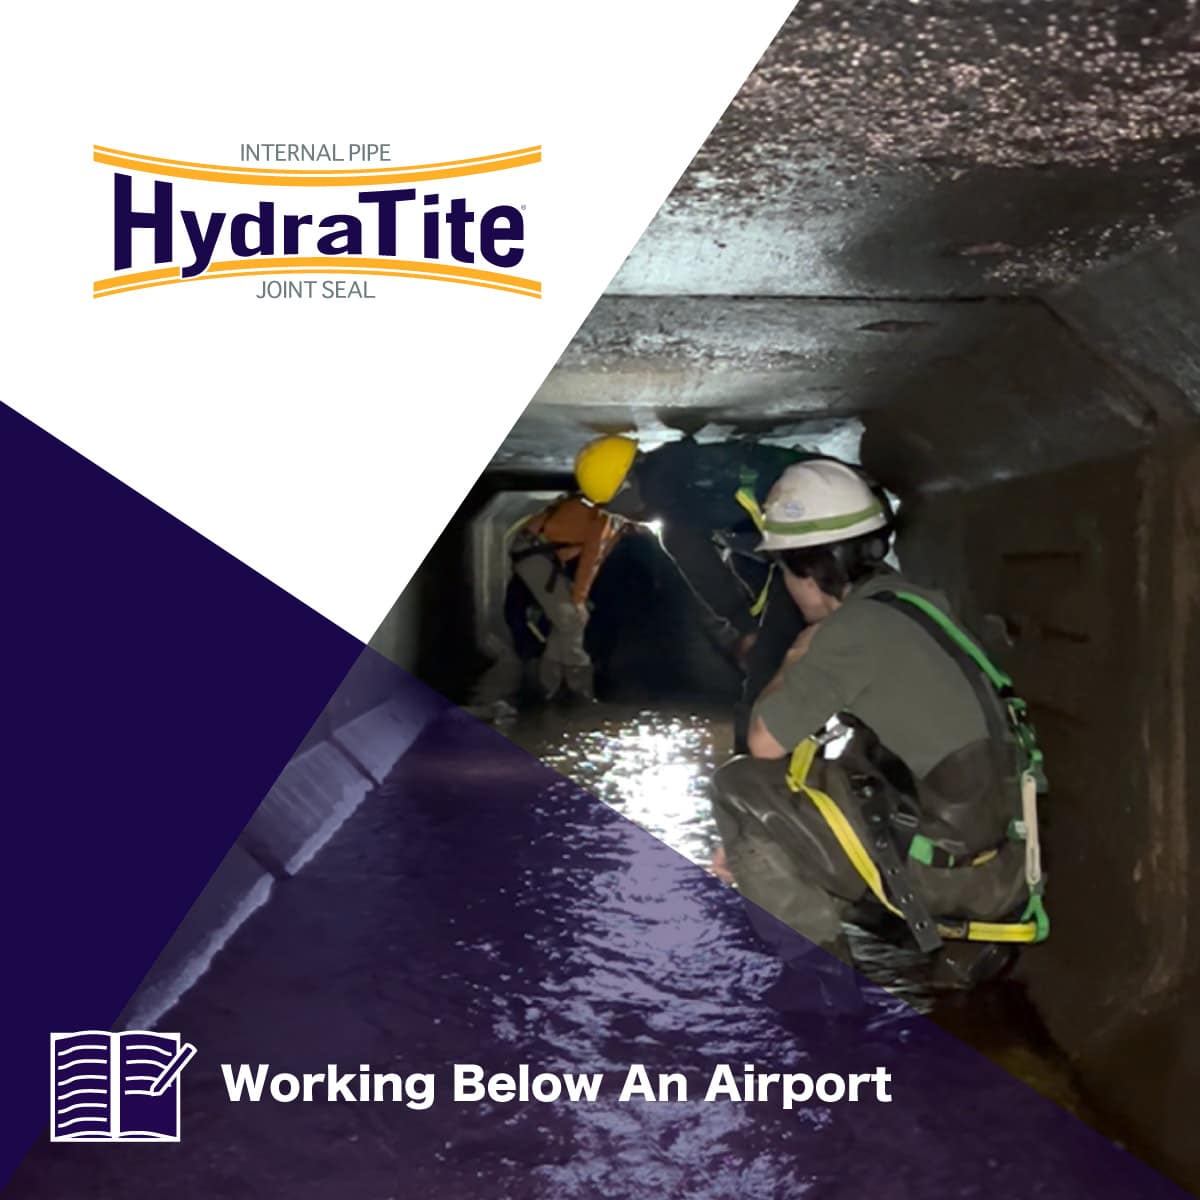 Field technicians working in a short culvert, 'Working Below An Airport'